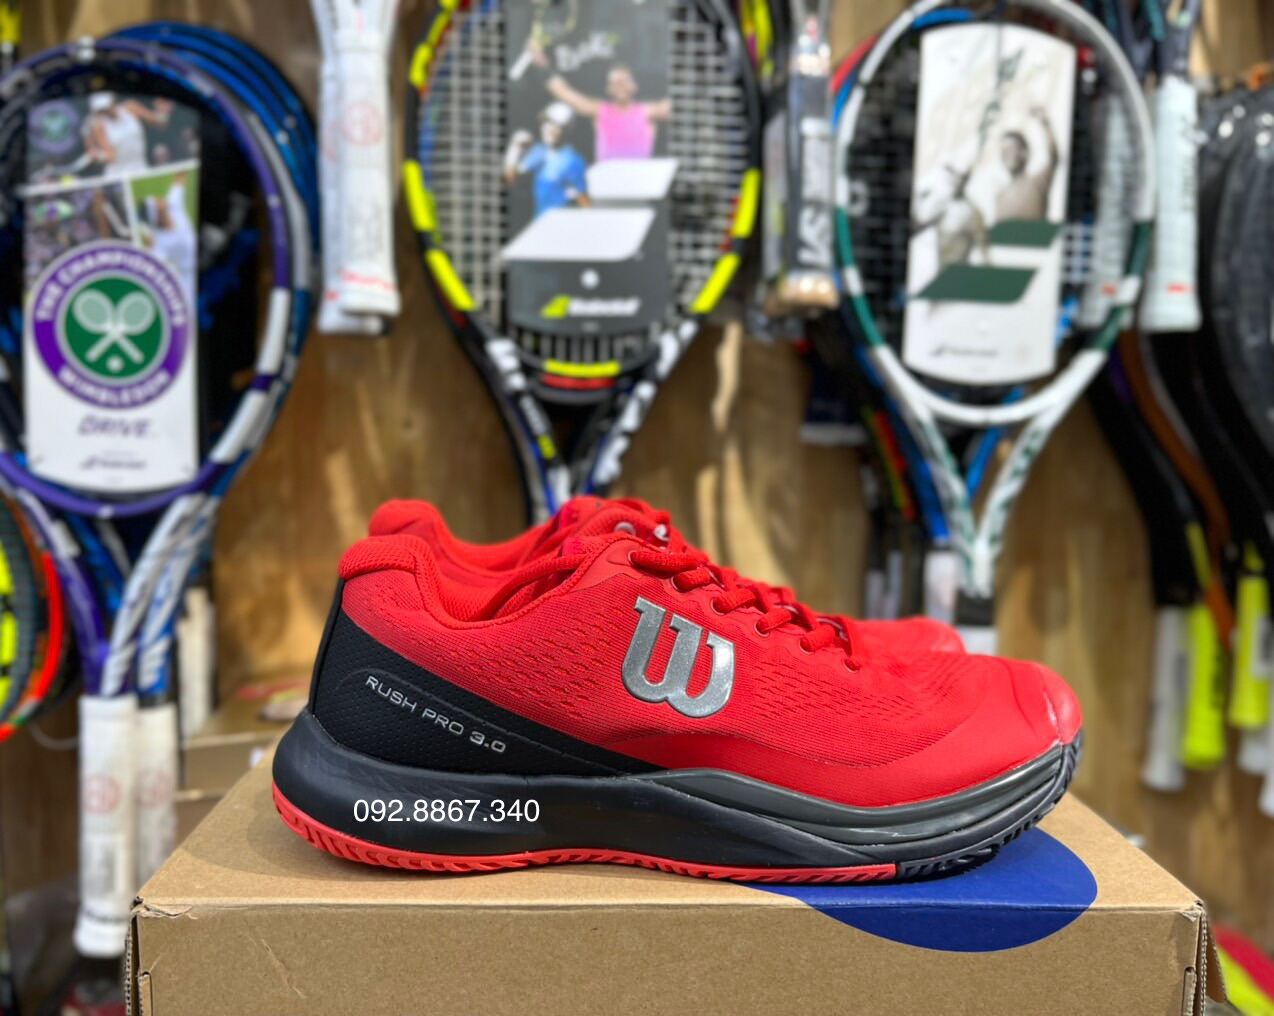 Giày tennis wilson Chuyên sân cứng nhóm.màu Red